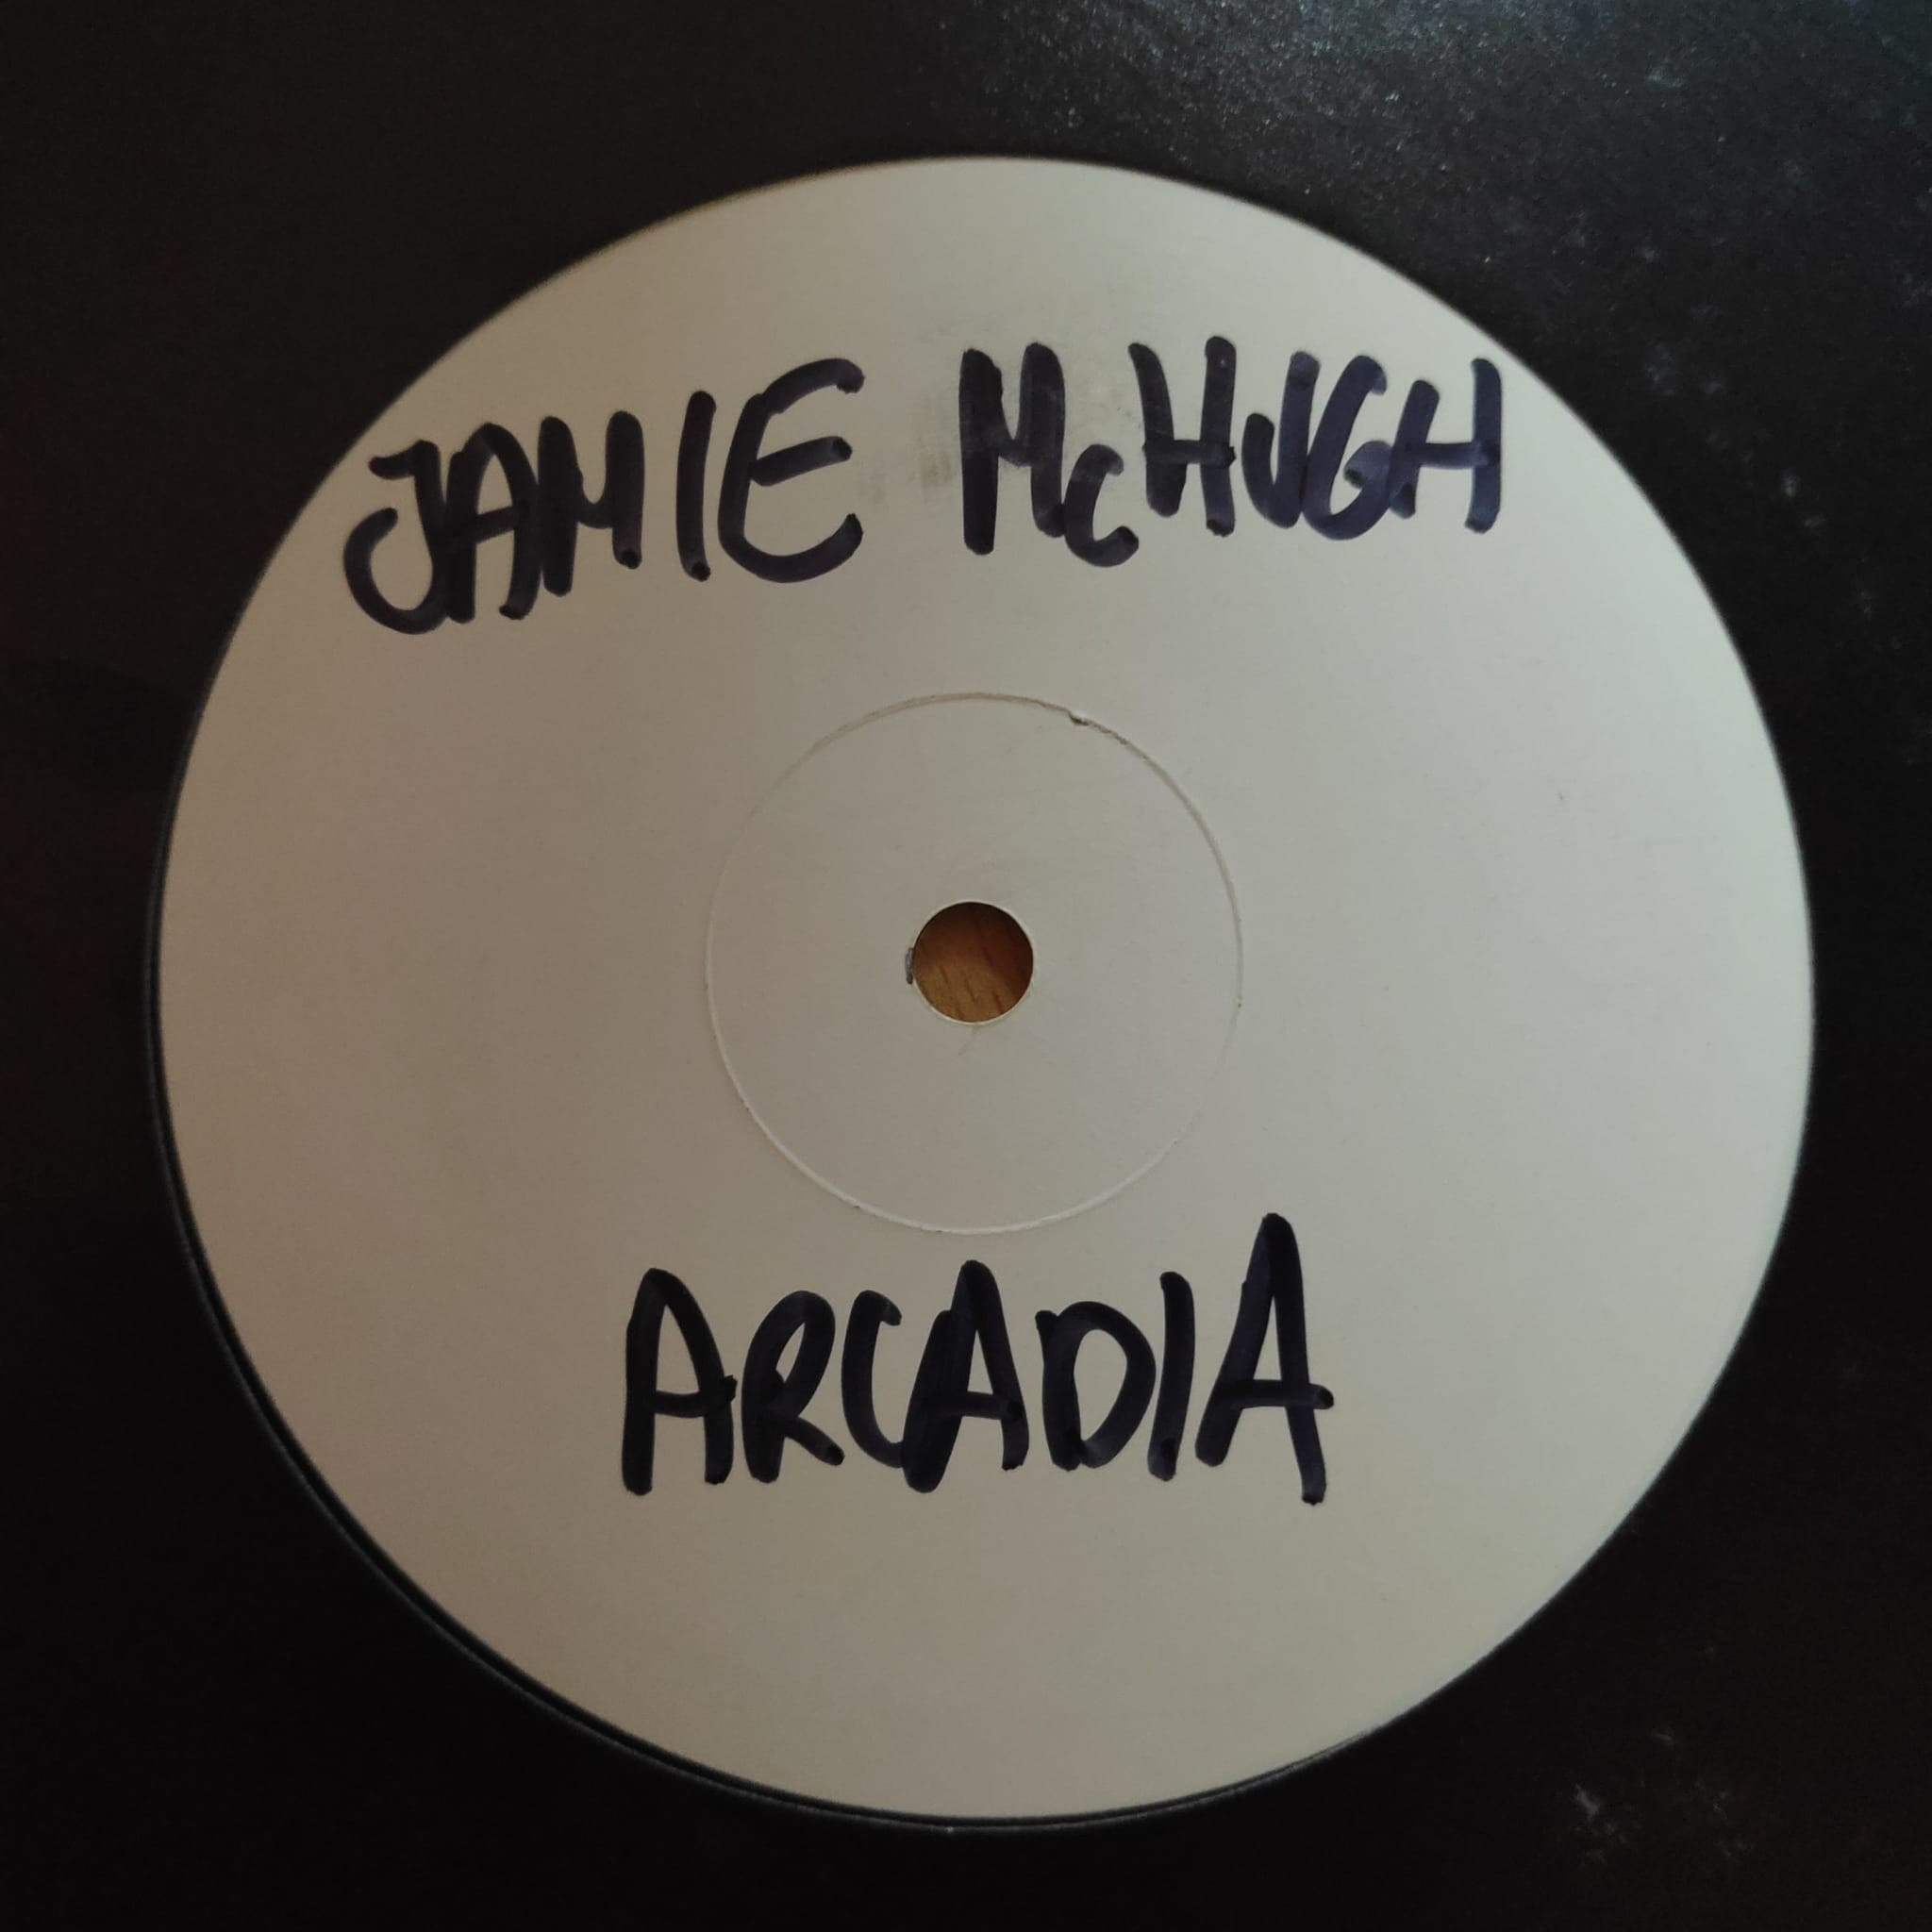 (CUB2160) Jamie McHugh ‎– Arcadia